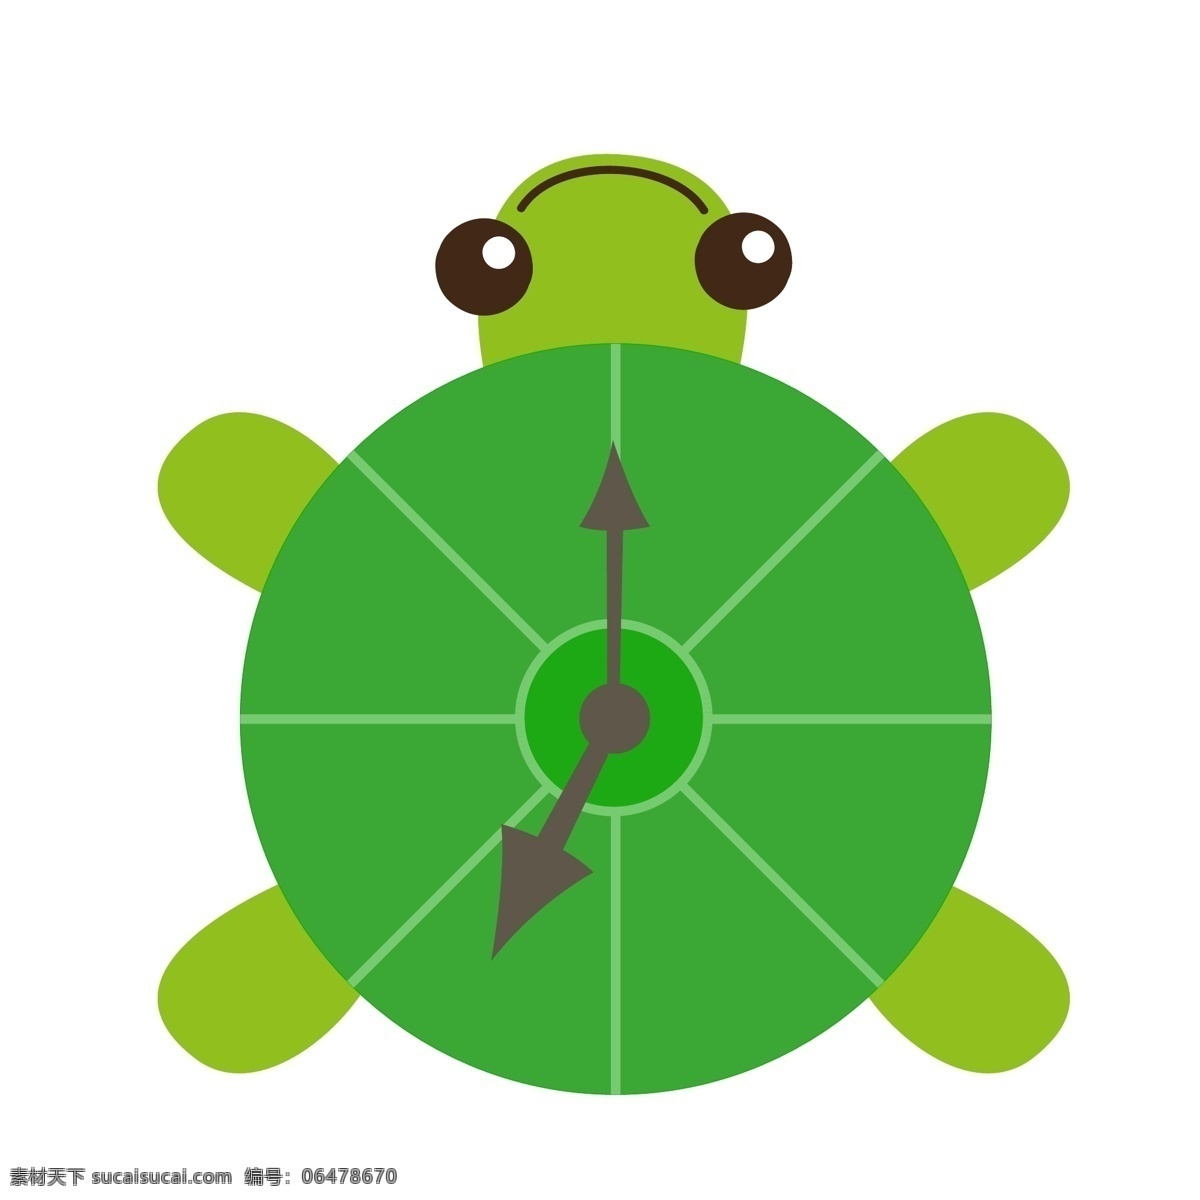 乌龟 时钟 矢量 元素 卡通时钟 绿色乌龟 背景装饰 挂饰 钟表 矢量图